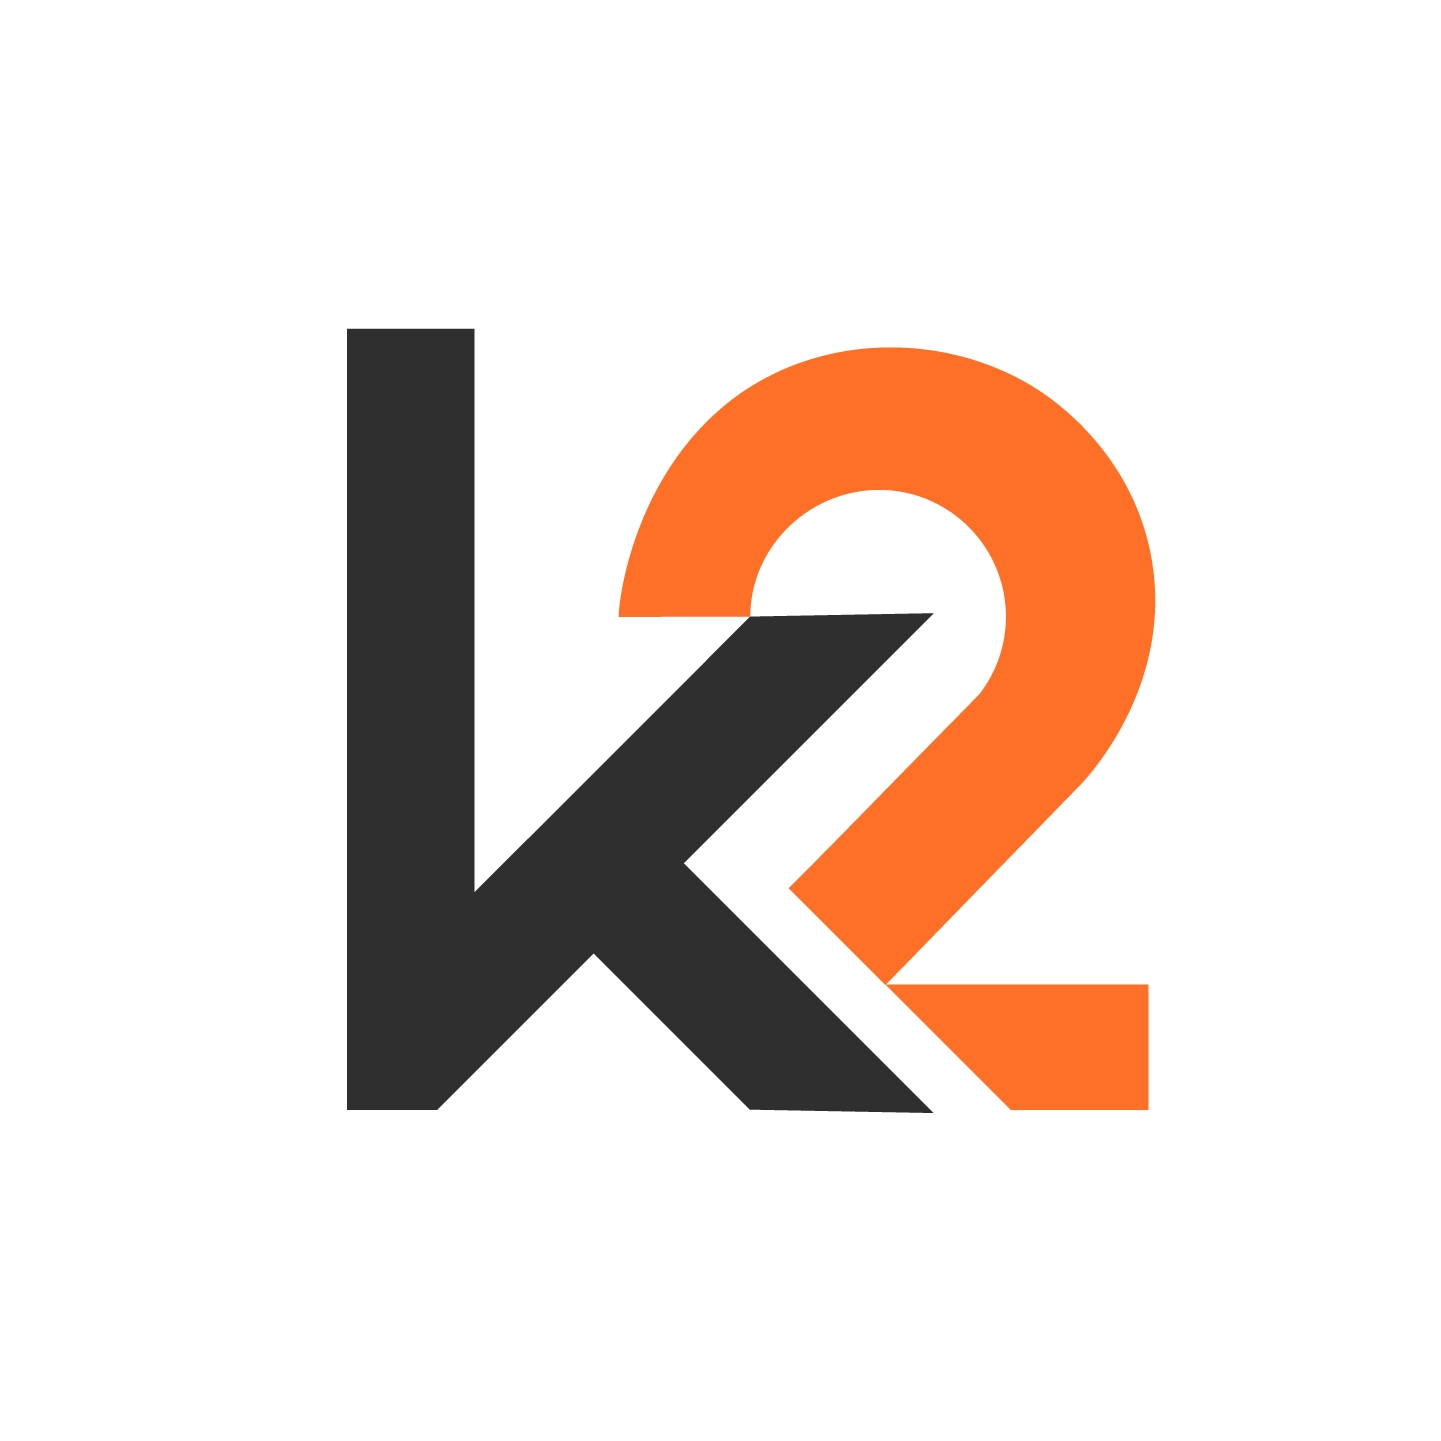 K2 Services